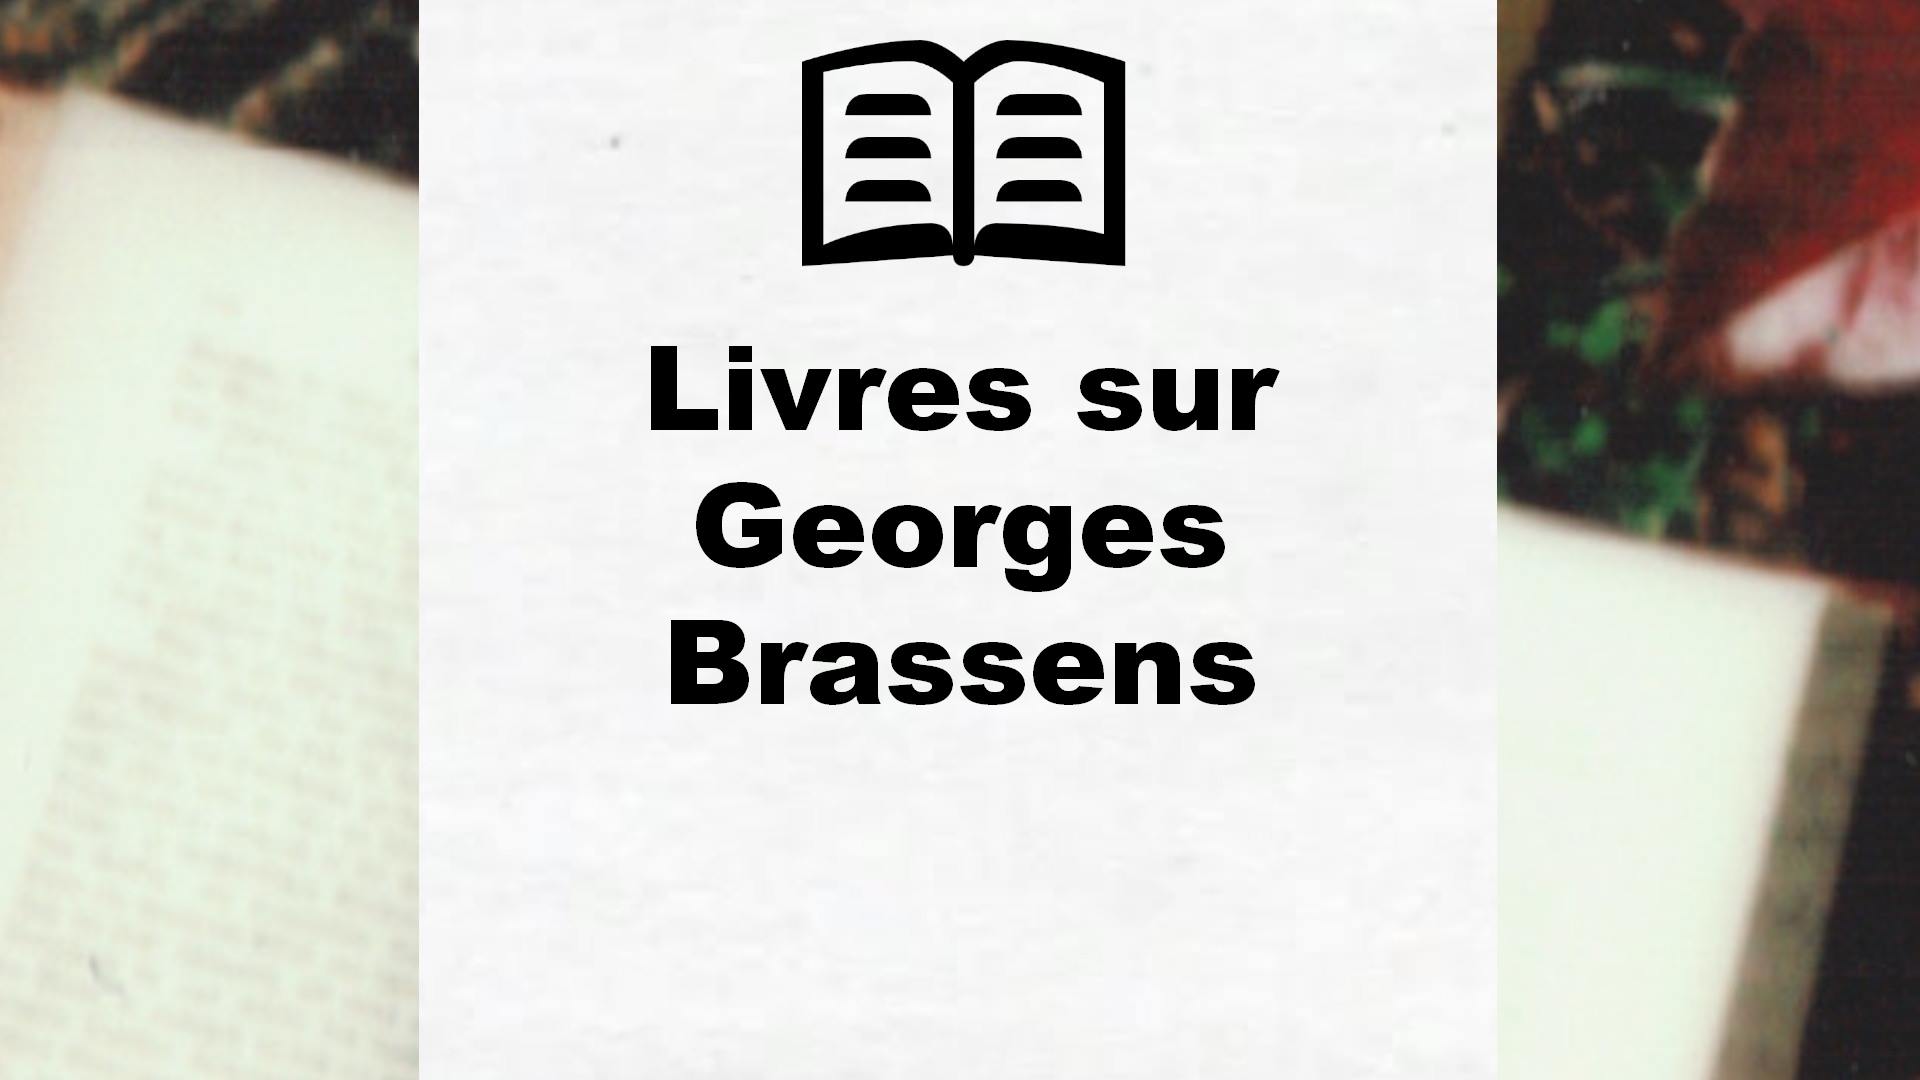 Livres sur Georges Brassens